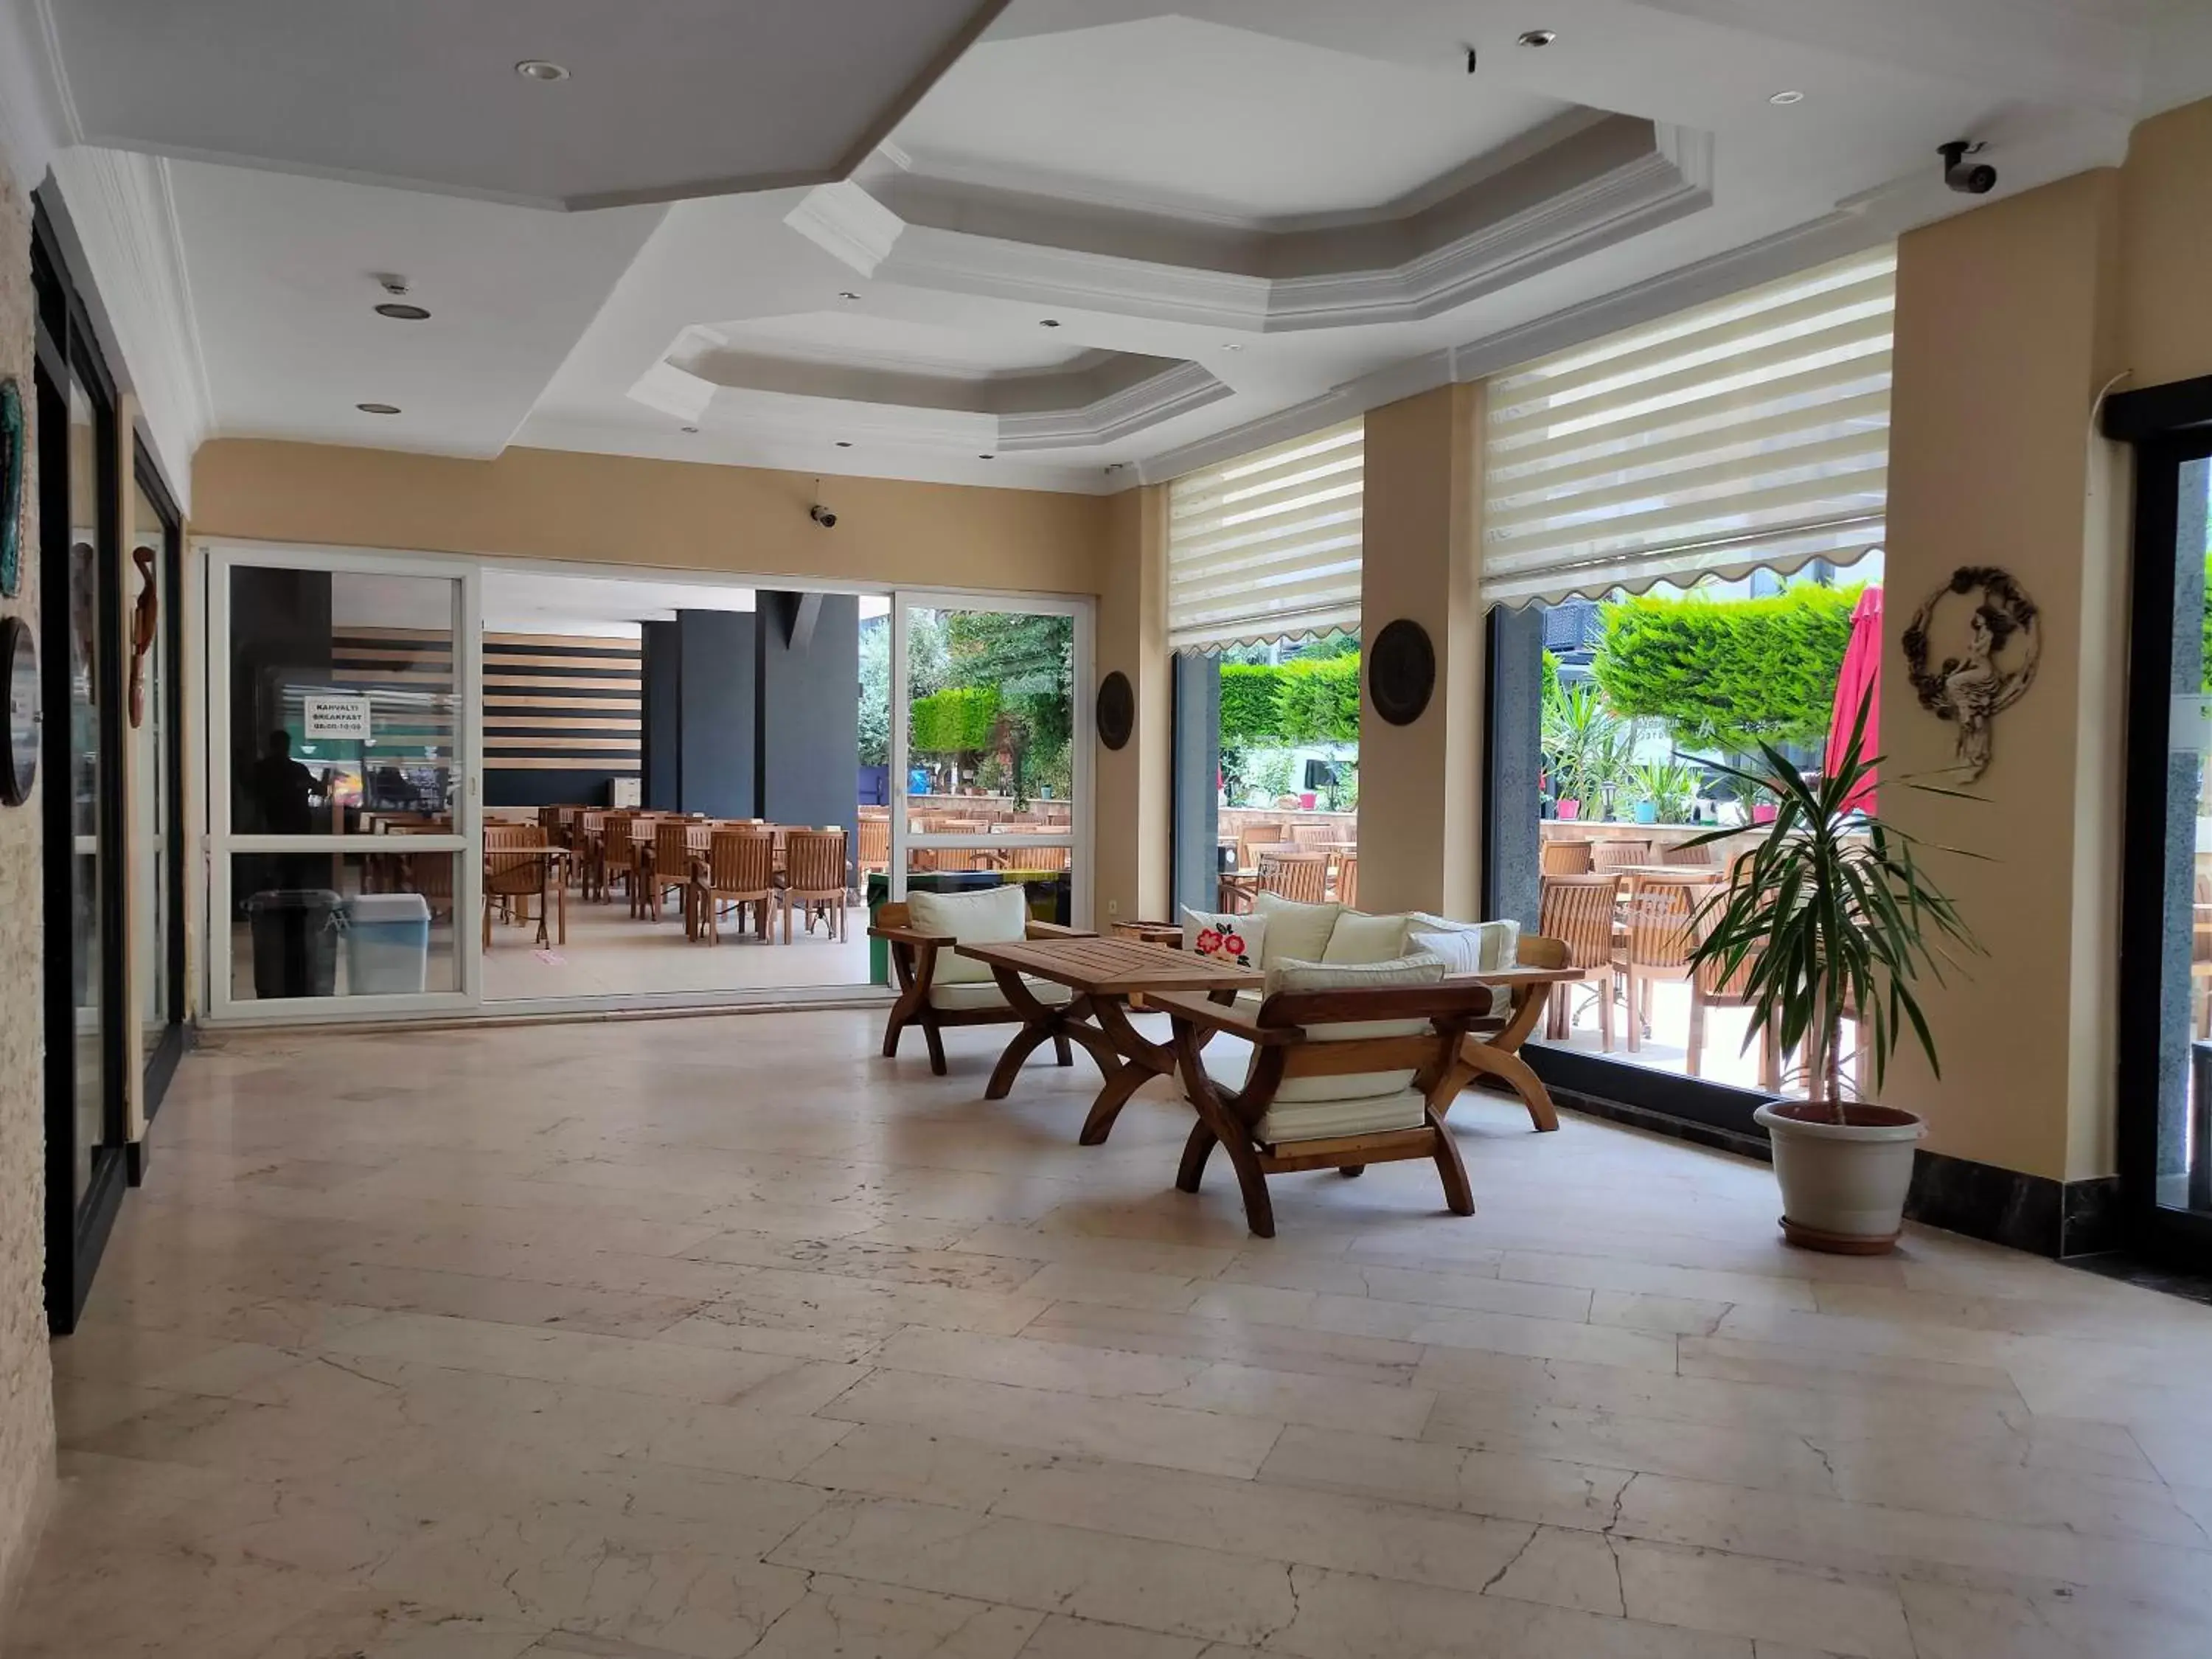 Lobby or reception in Altinersan Hotel